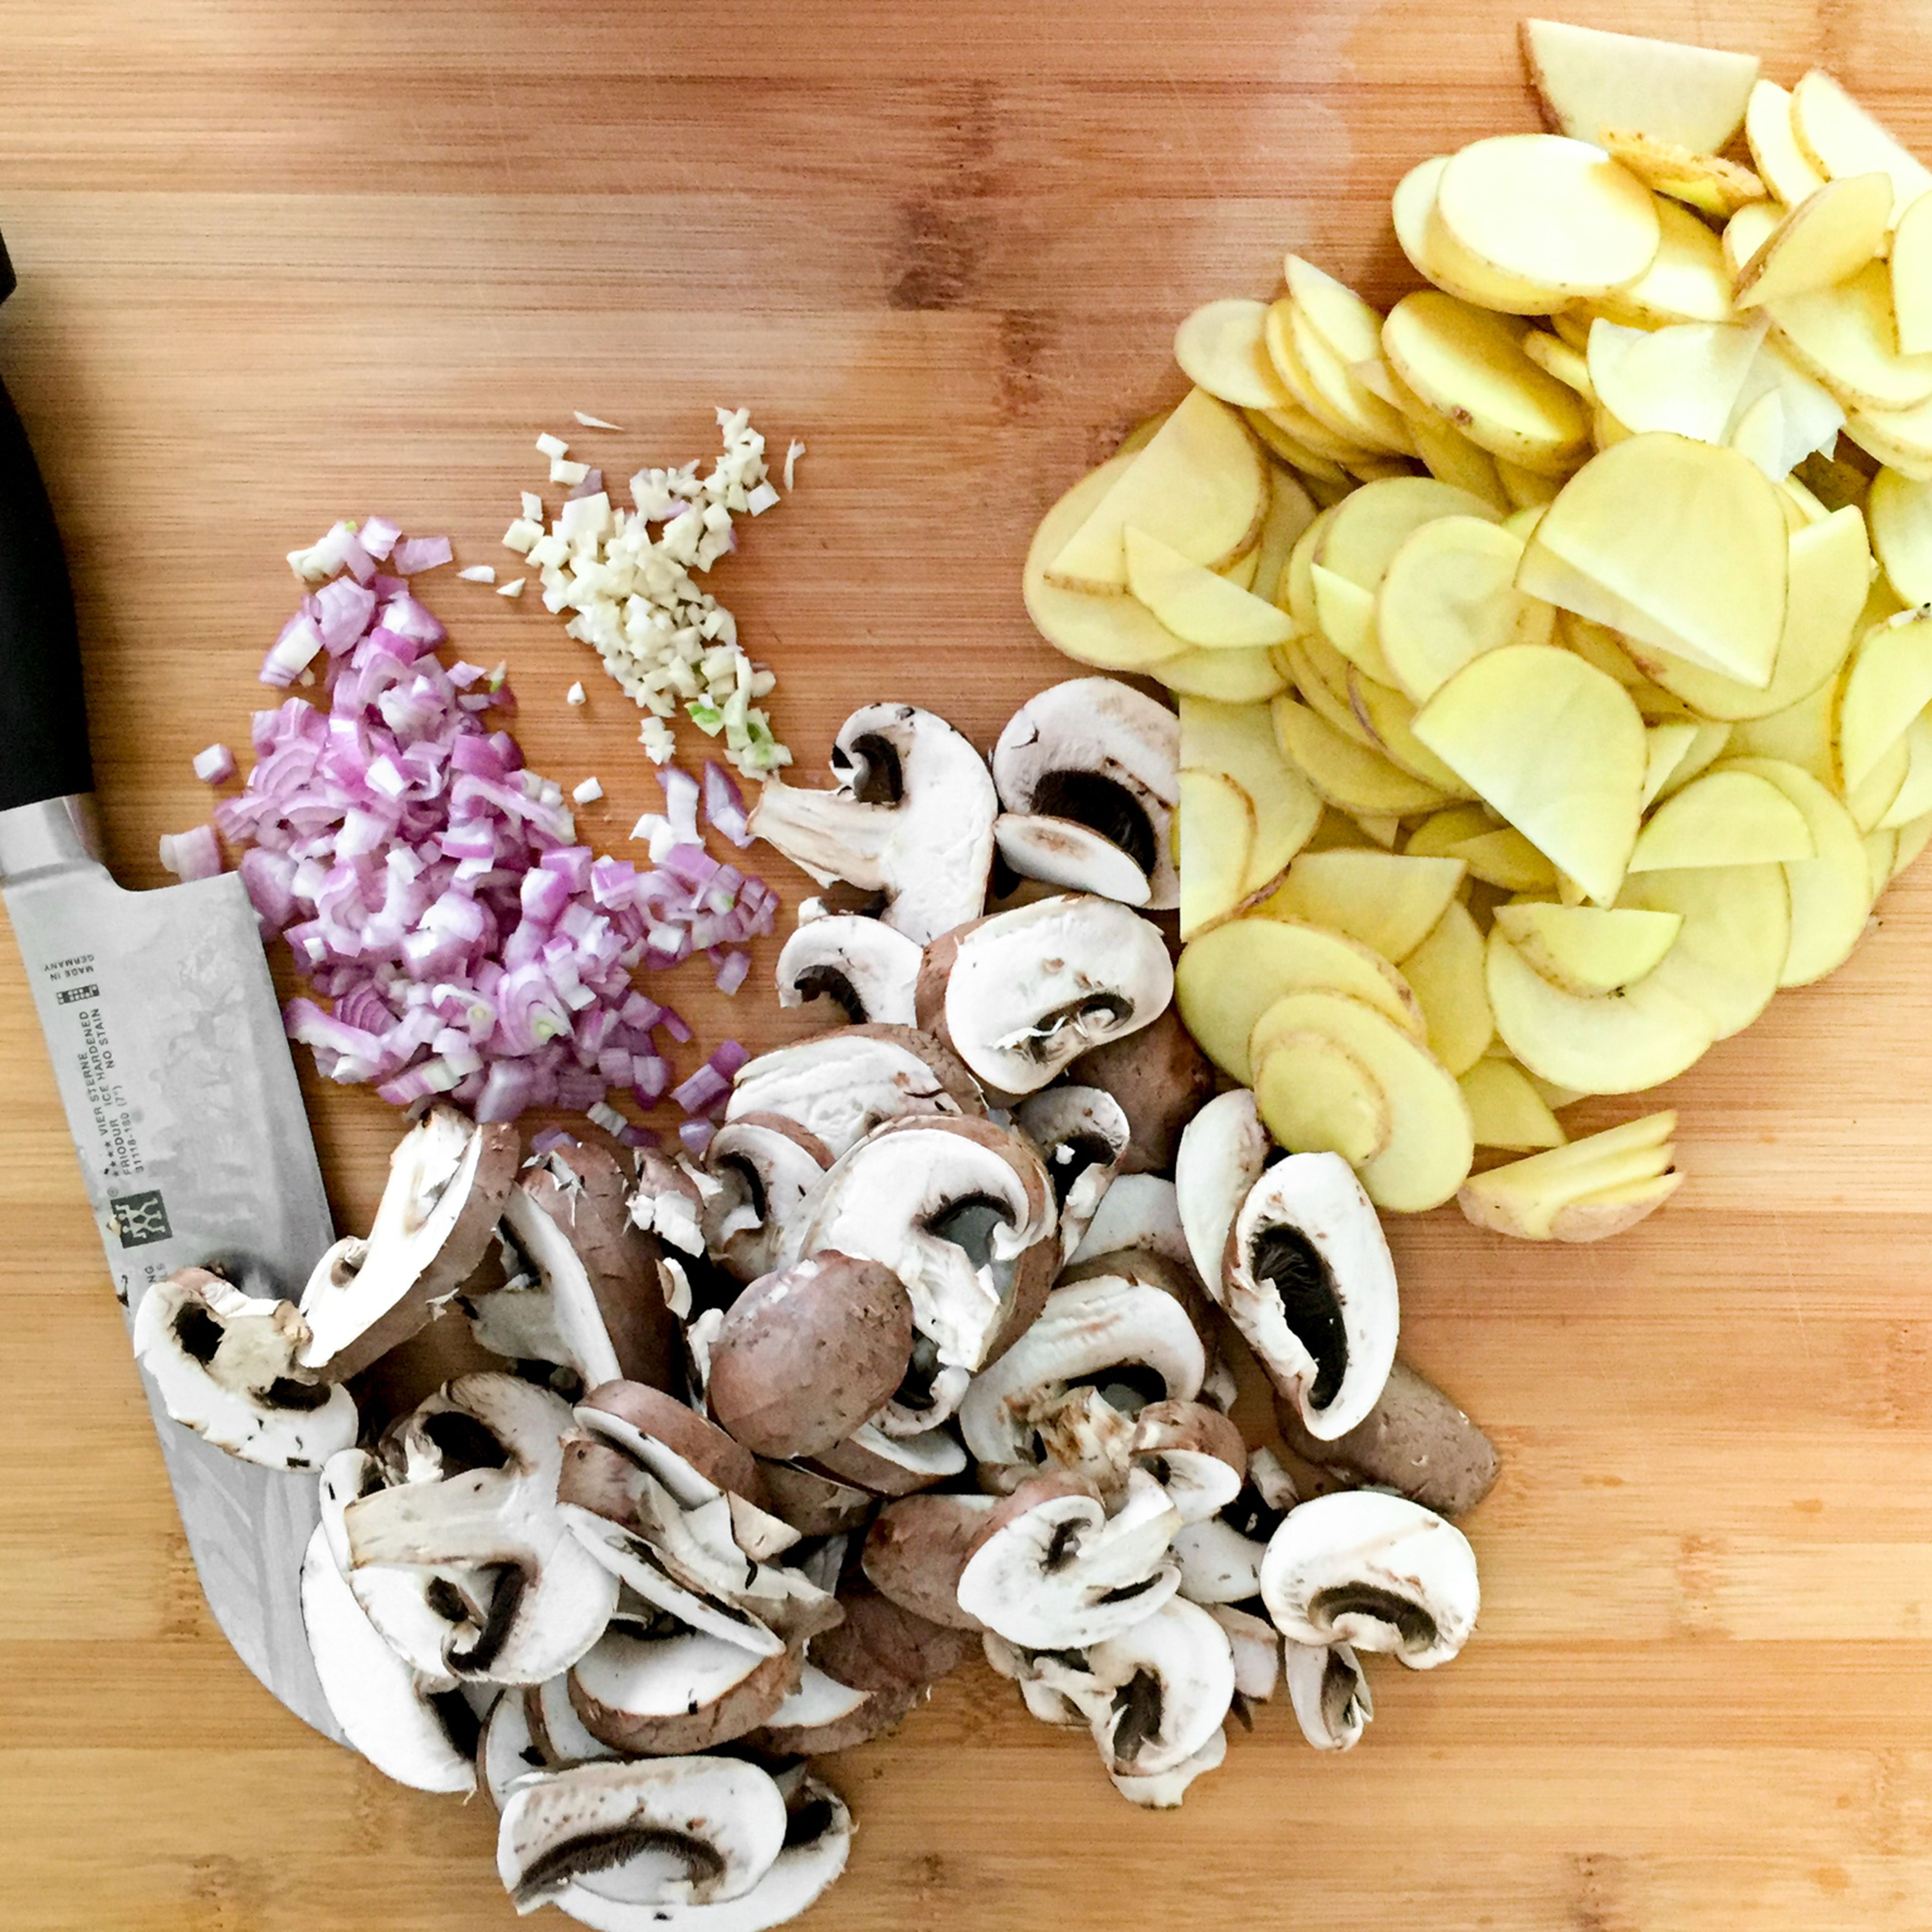 Den Ofen auf 200°C vorheizen. Die Kartoffeln schälen und in Scheiben schneiden. Zwiebel und Knoblauch fein hacken. Anschließend die Pilze in dicke Scheiben schneiden.